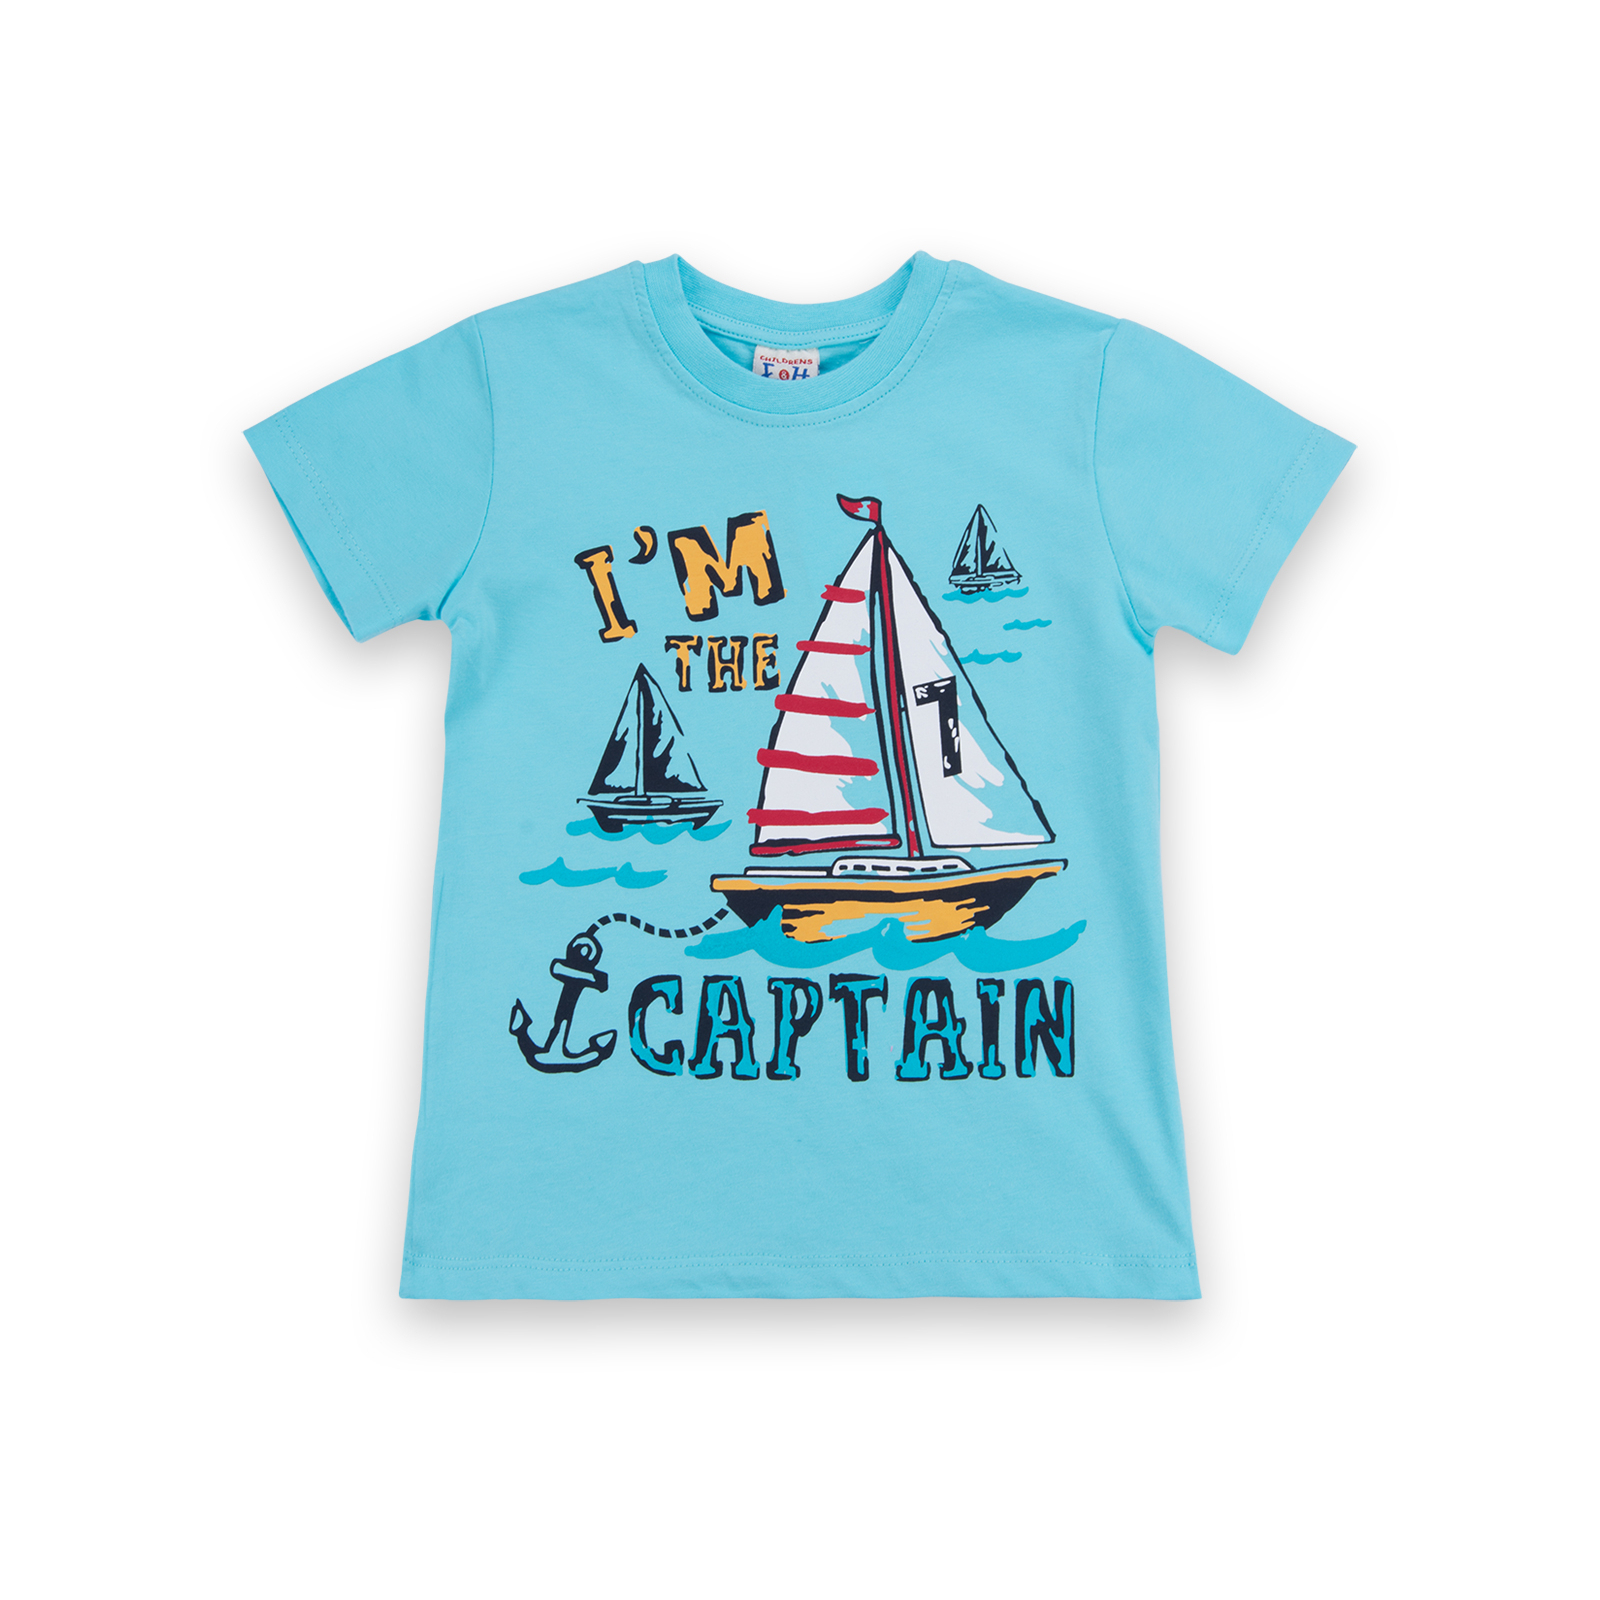 Набор детской одежды E&H с корабликами "I'm the captain" (8306-92B-blue) изображение 2